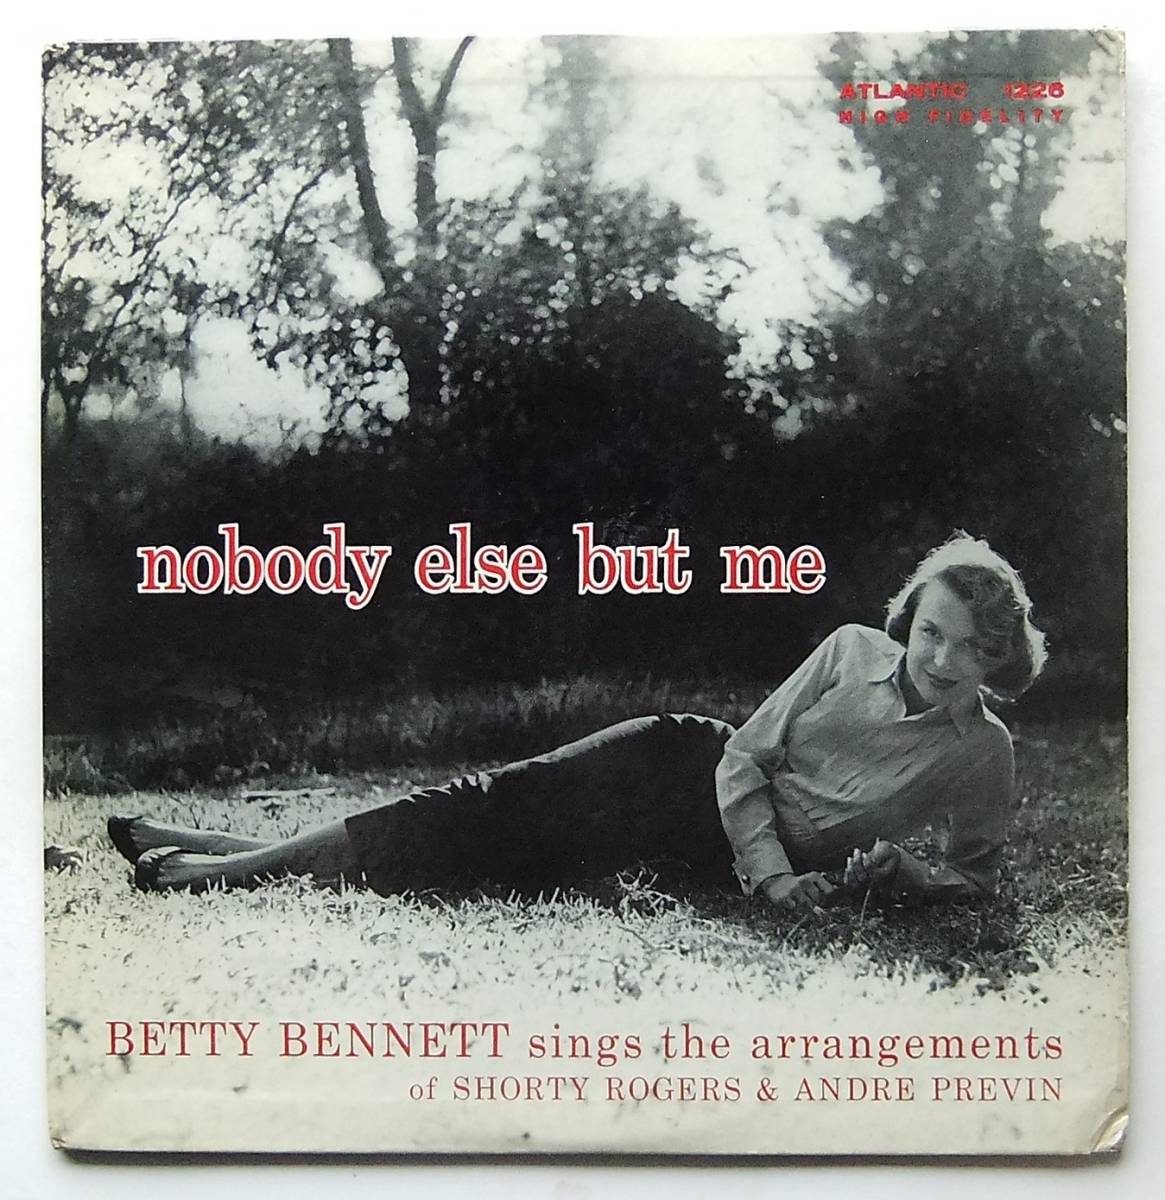 お手軽価格で贈りやすい ◆ BETTY BENNETT / Nobody Else But Me ◆ Atlantic 1226 (black:dg) ◆ ボーカル